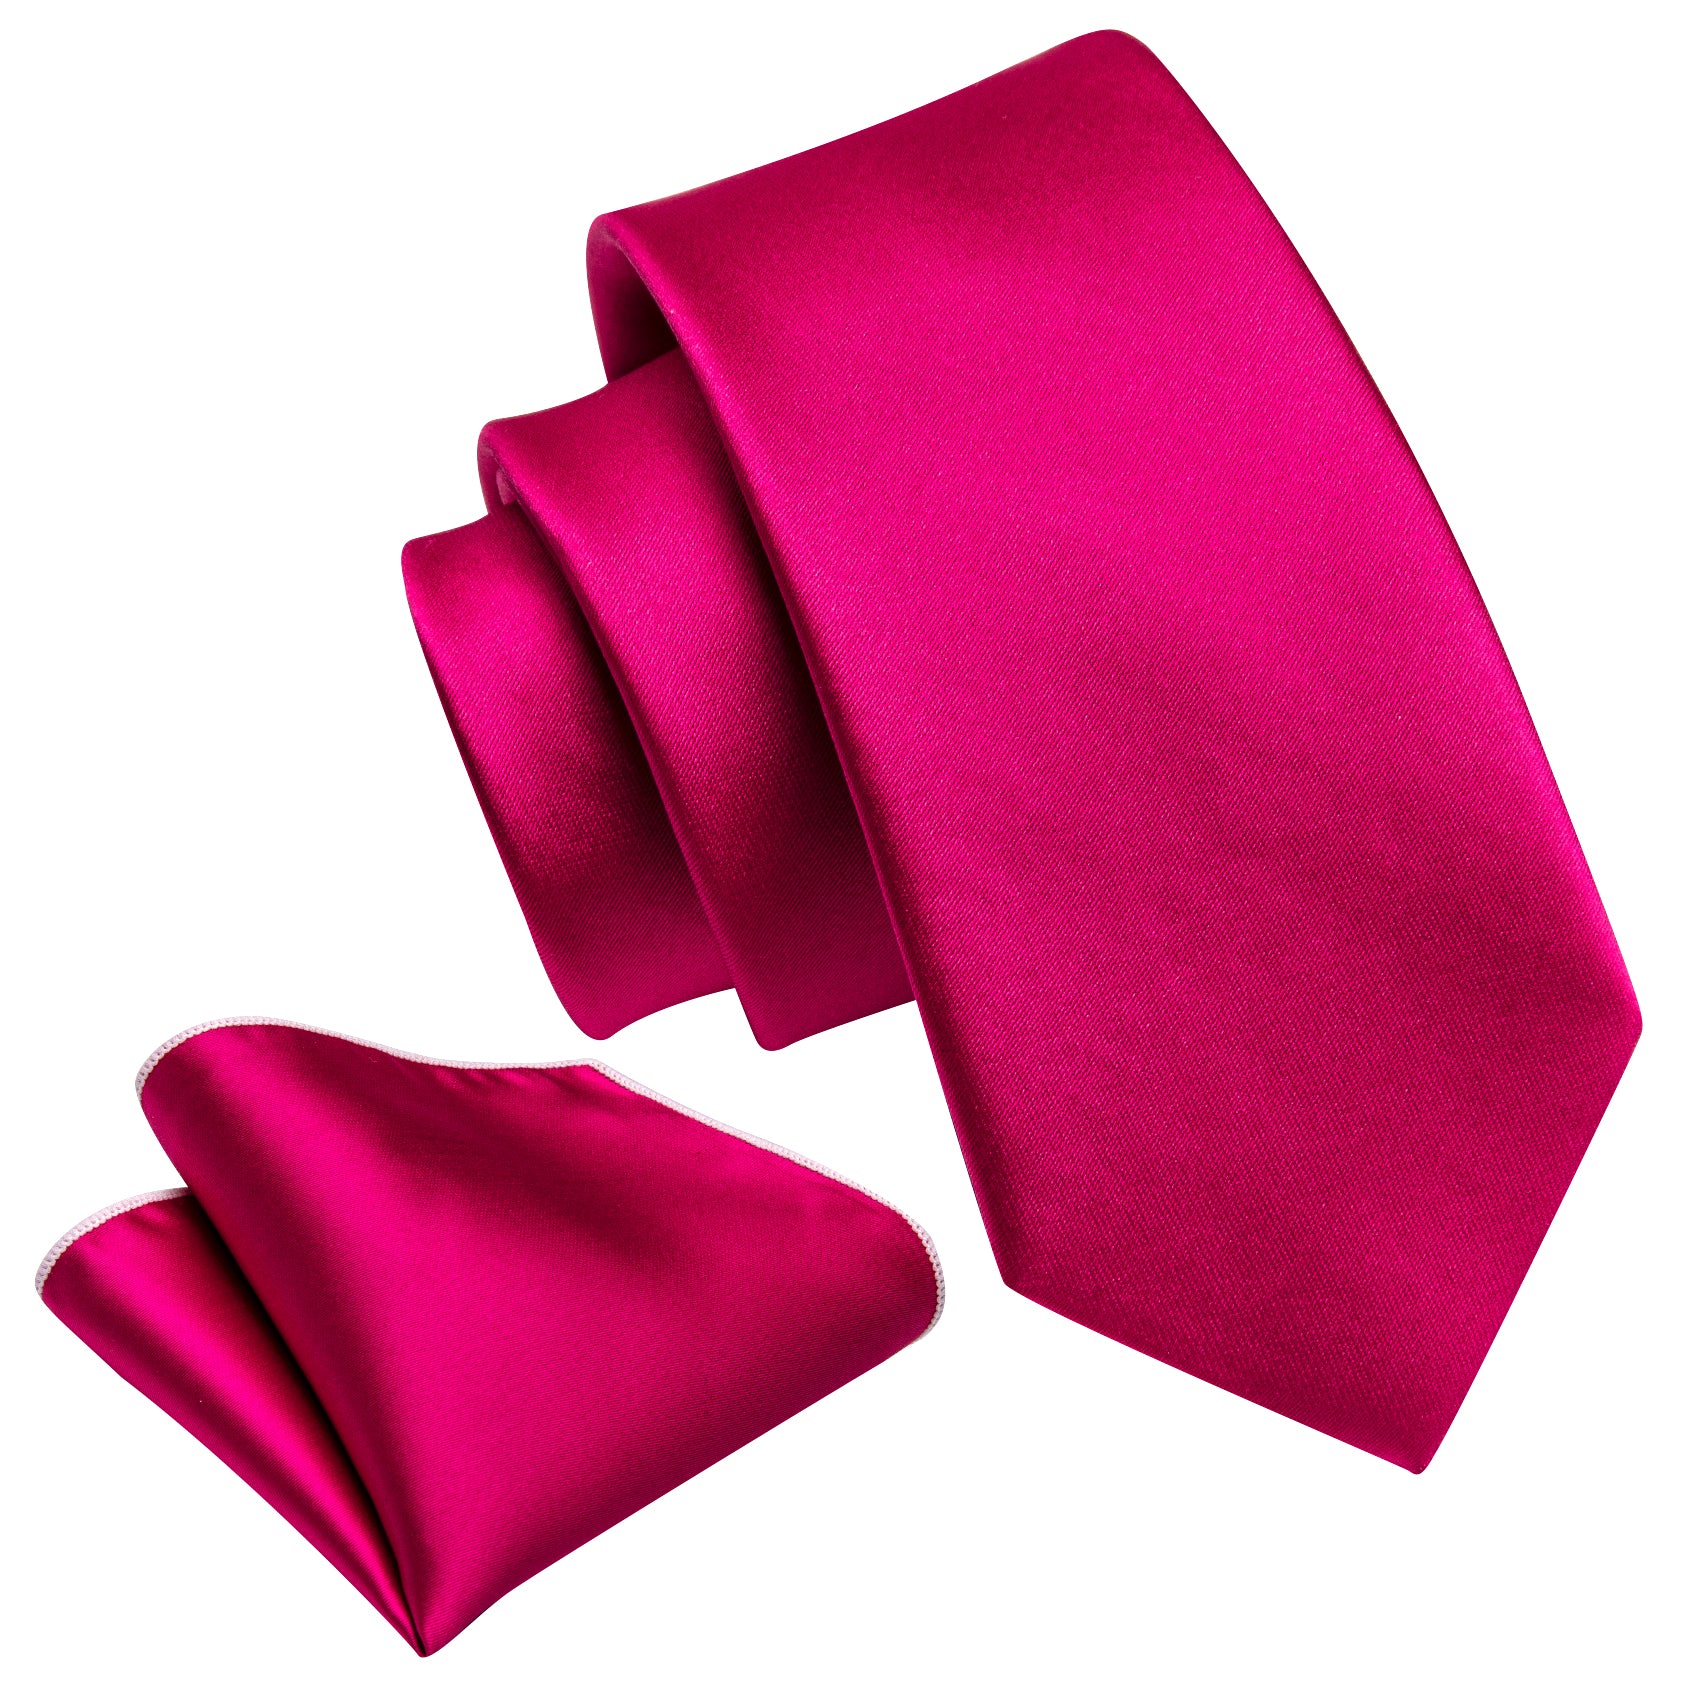 Rose Red Solid Tie Pocket Square Set For Kids